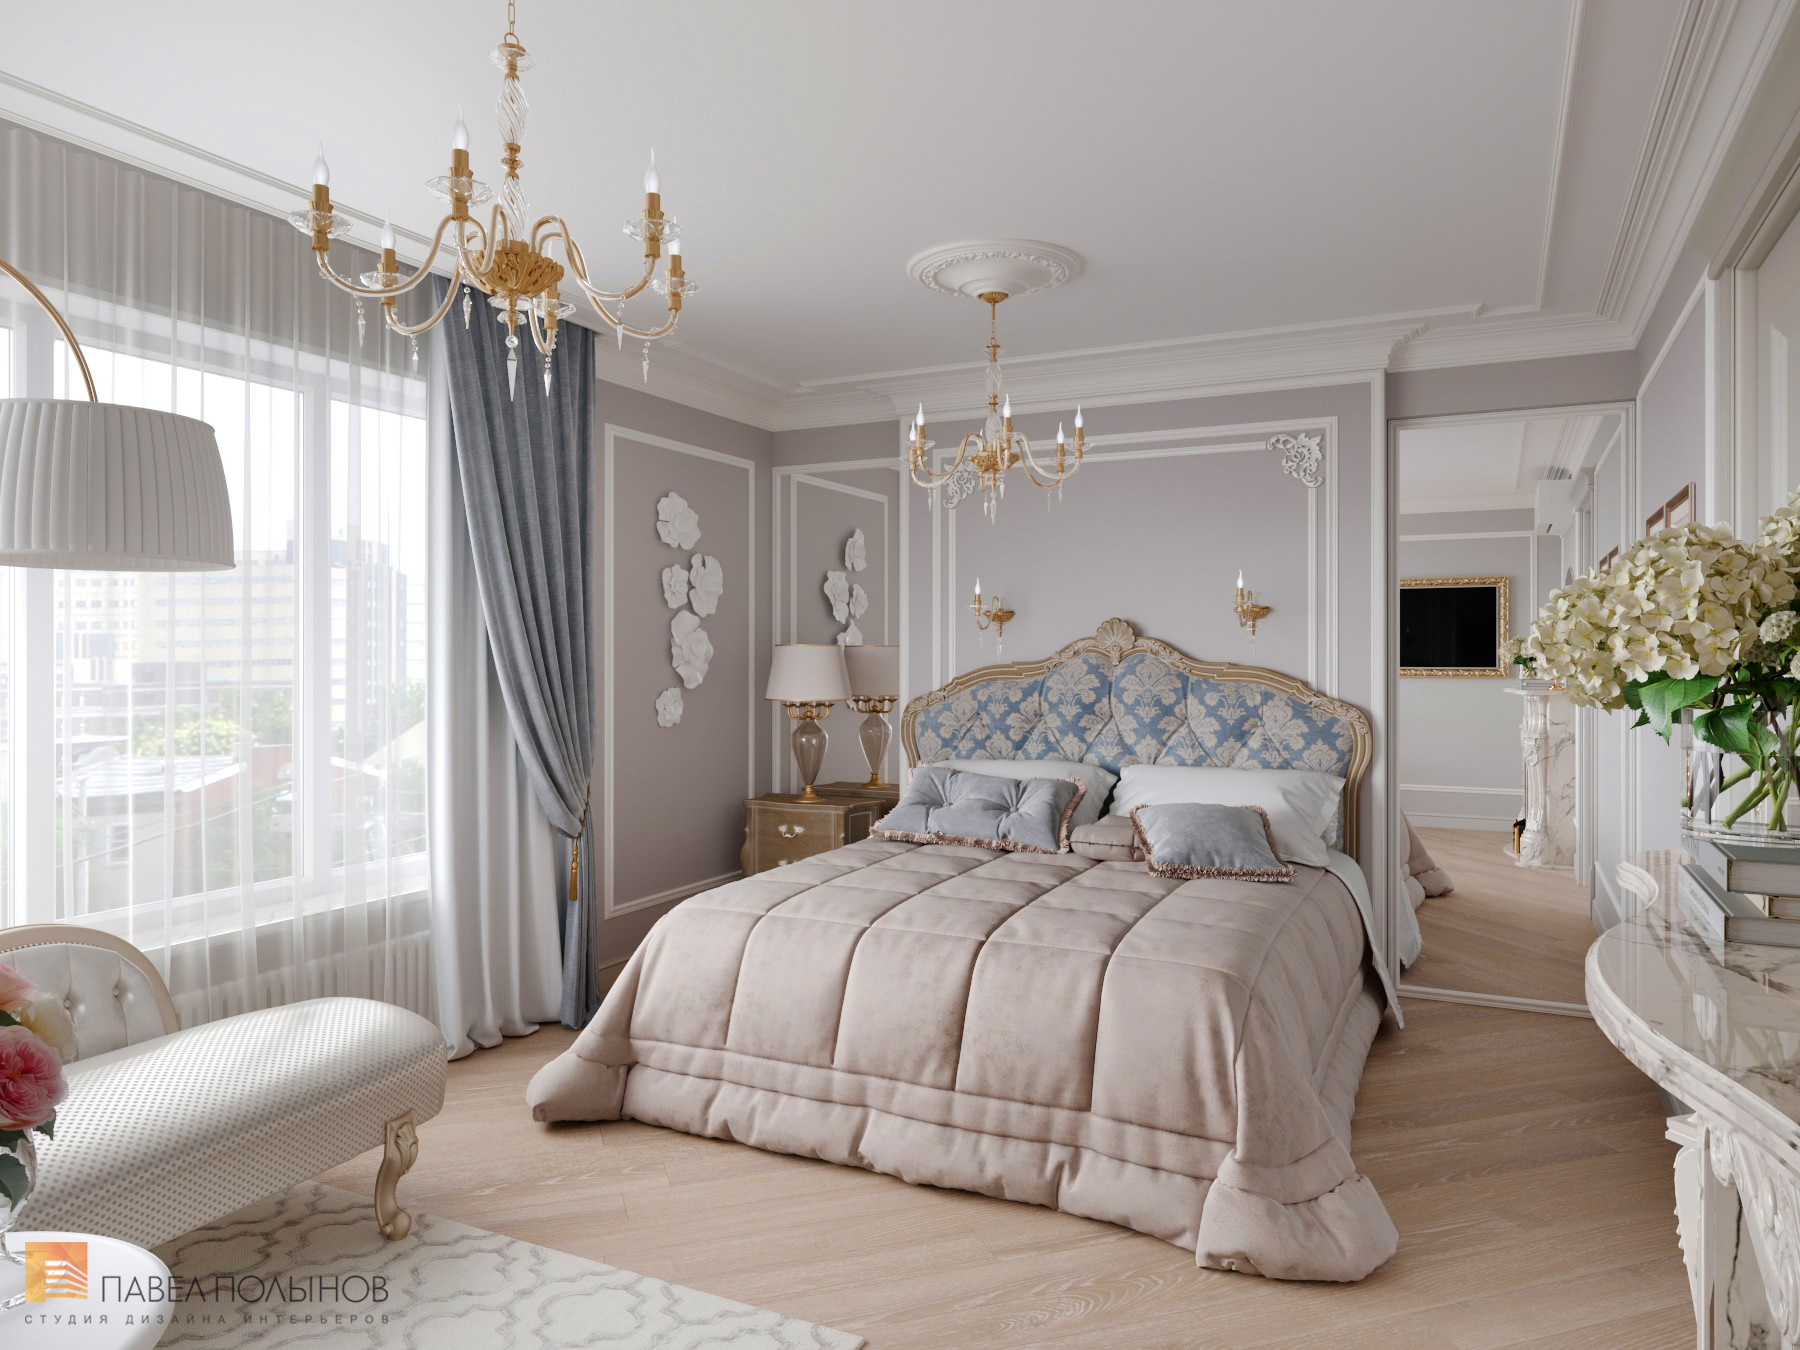 Фото спальня из проекта «Дизайн квартиры в стиле современной классики, ЖК «Riverside», 180 кв.м.»